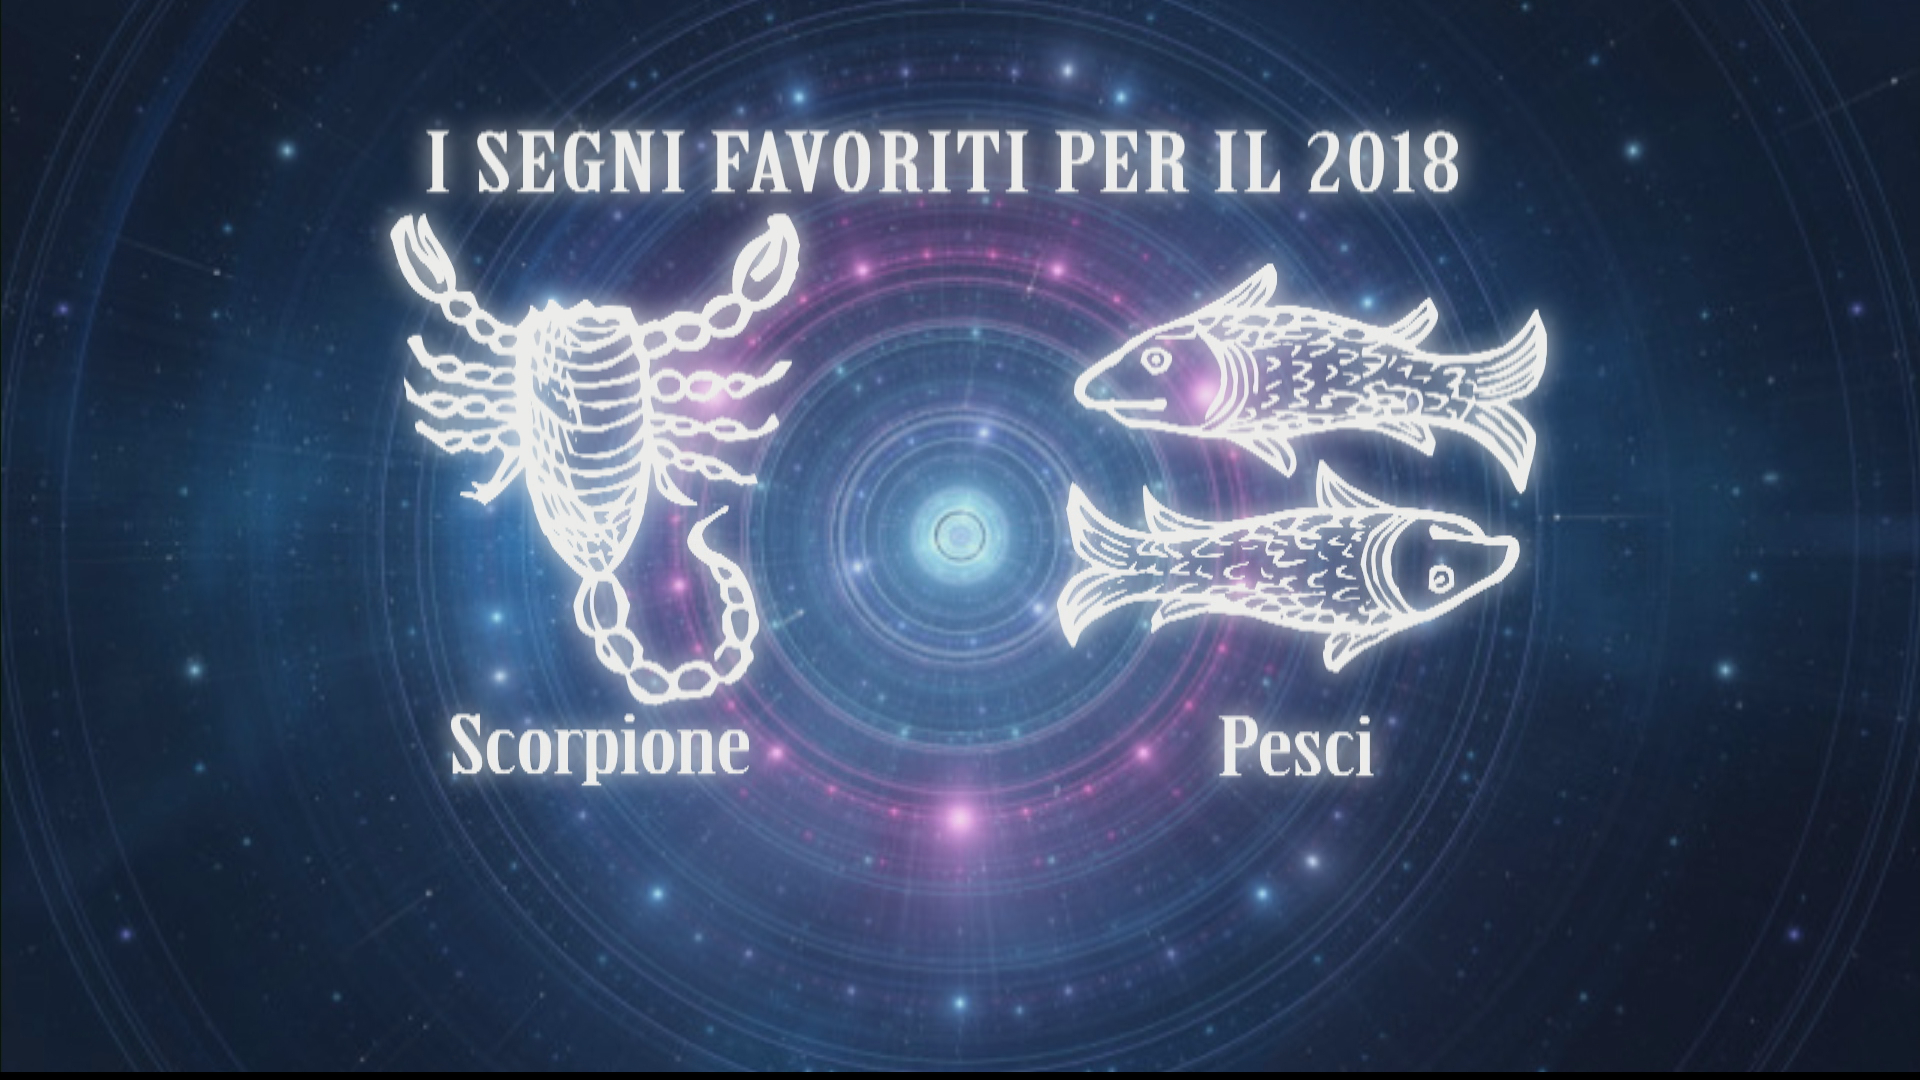 Oroscopo 2018 I Segni Favoriti Pesci Scorpione E Cancro Giove E Dalla Loro Parte Video Rai News